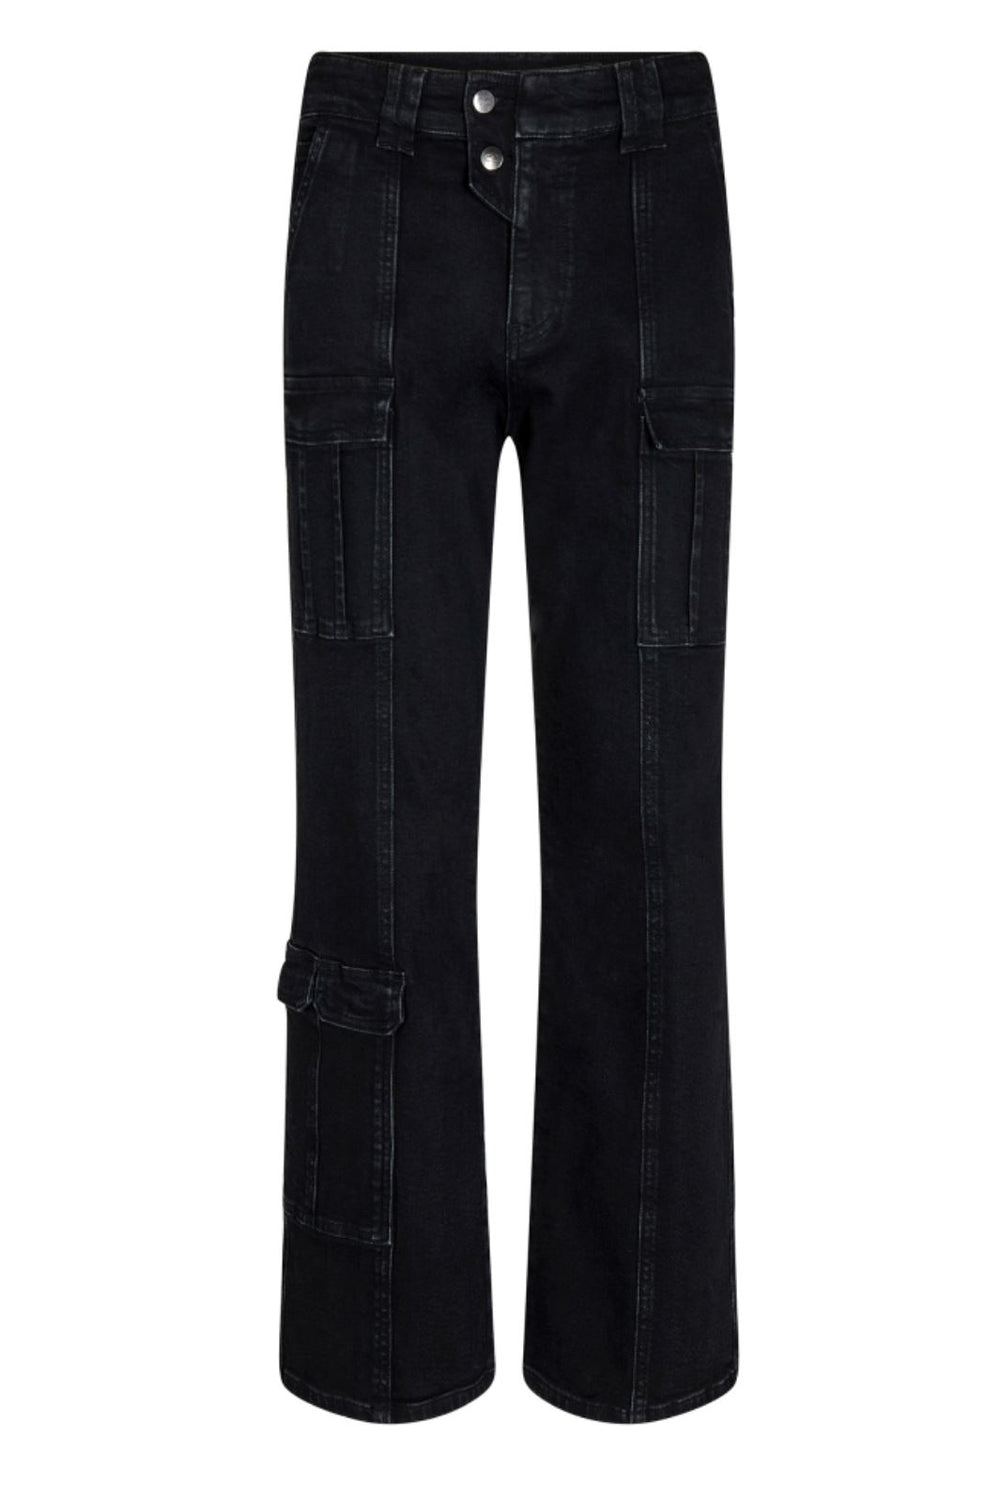 Co´couture - Jolenecc Flare Pocket Jeans - 96 Black Jeans 